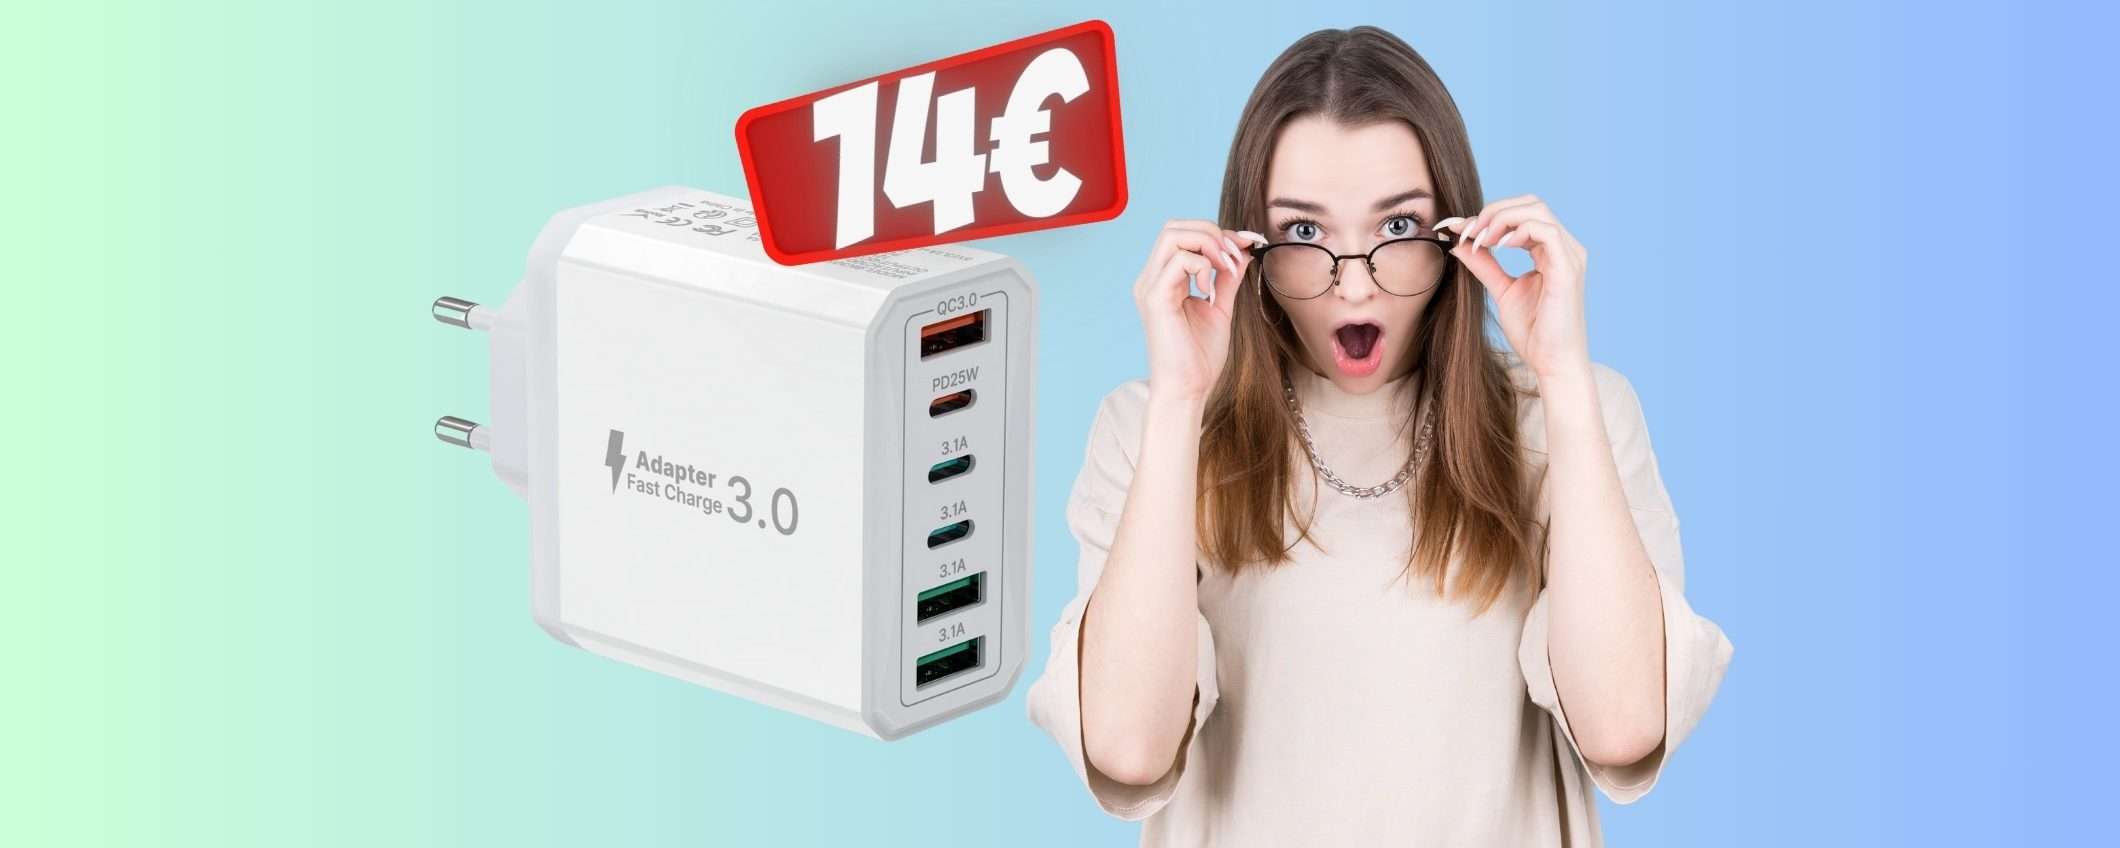 Solo 14€ per questo caricatore USB da 40W e 6 porte (Amazon)